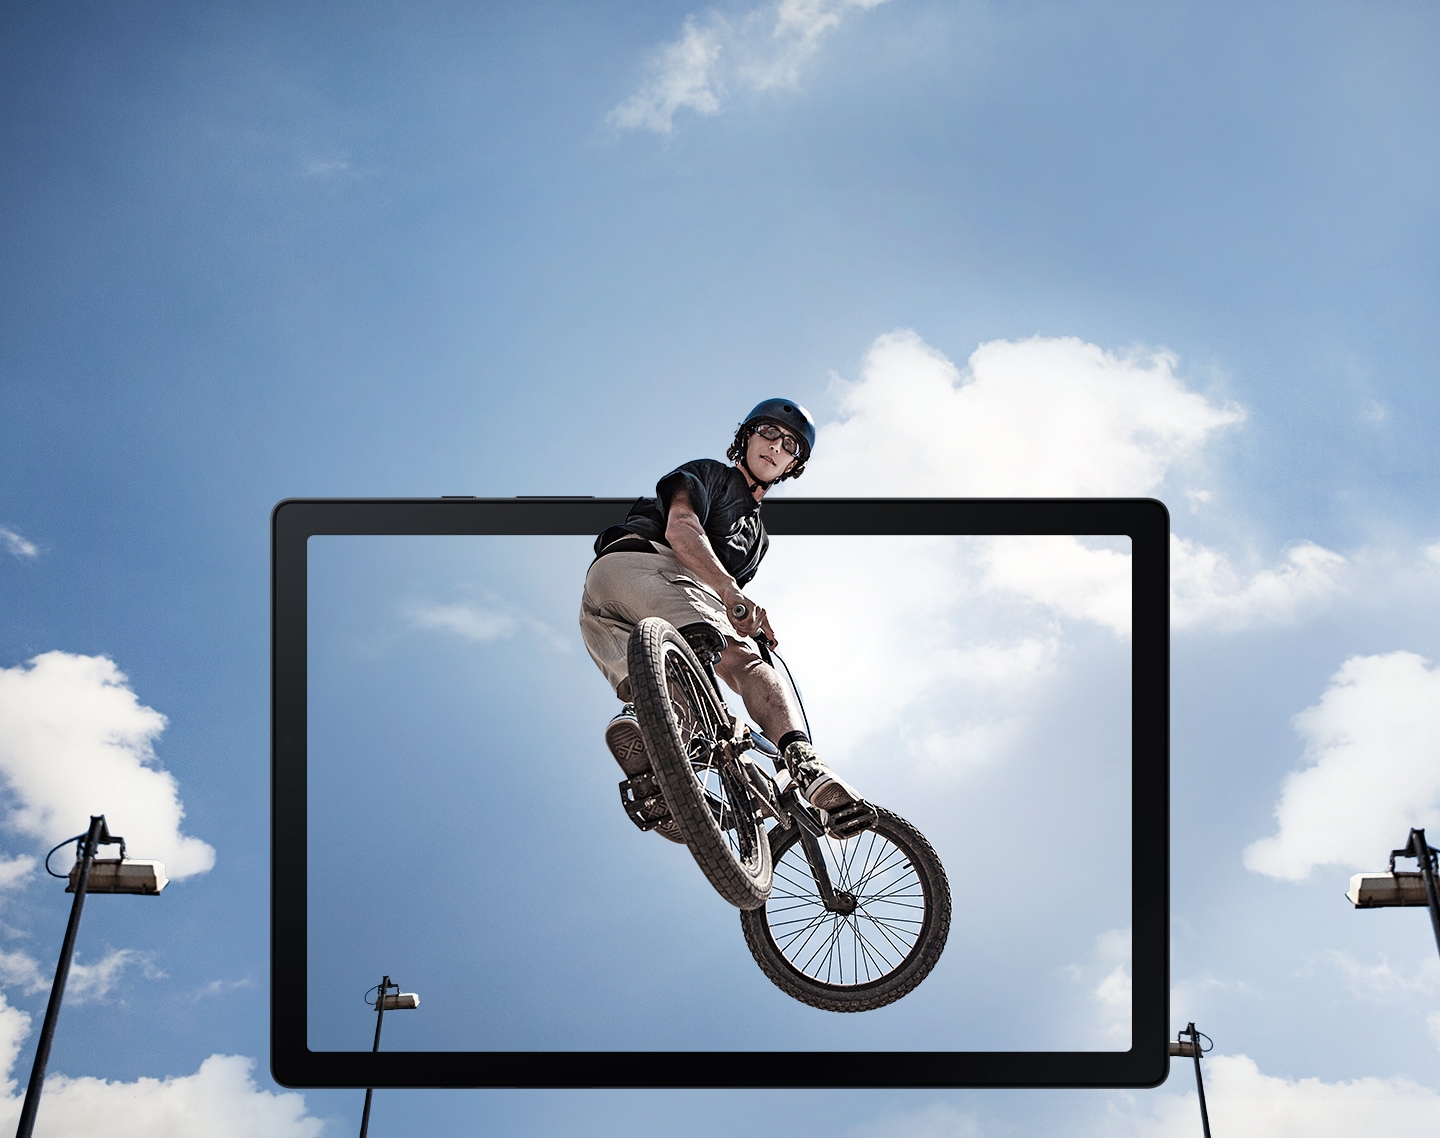 Se muestra un chico realizando un salto con una bicileta BMX en el aire que sobresale de la pantalla de la tablet.